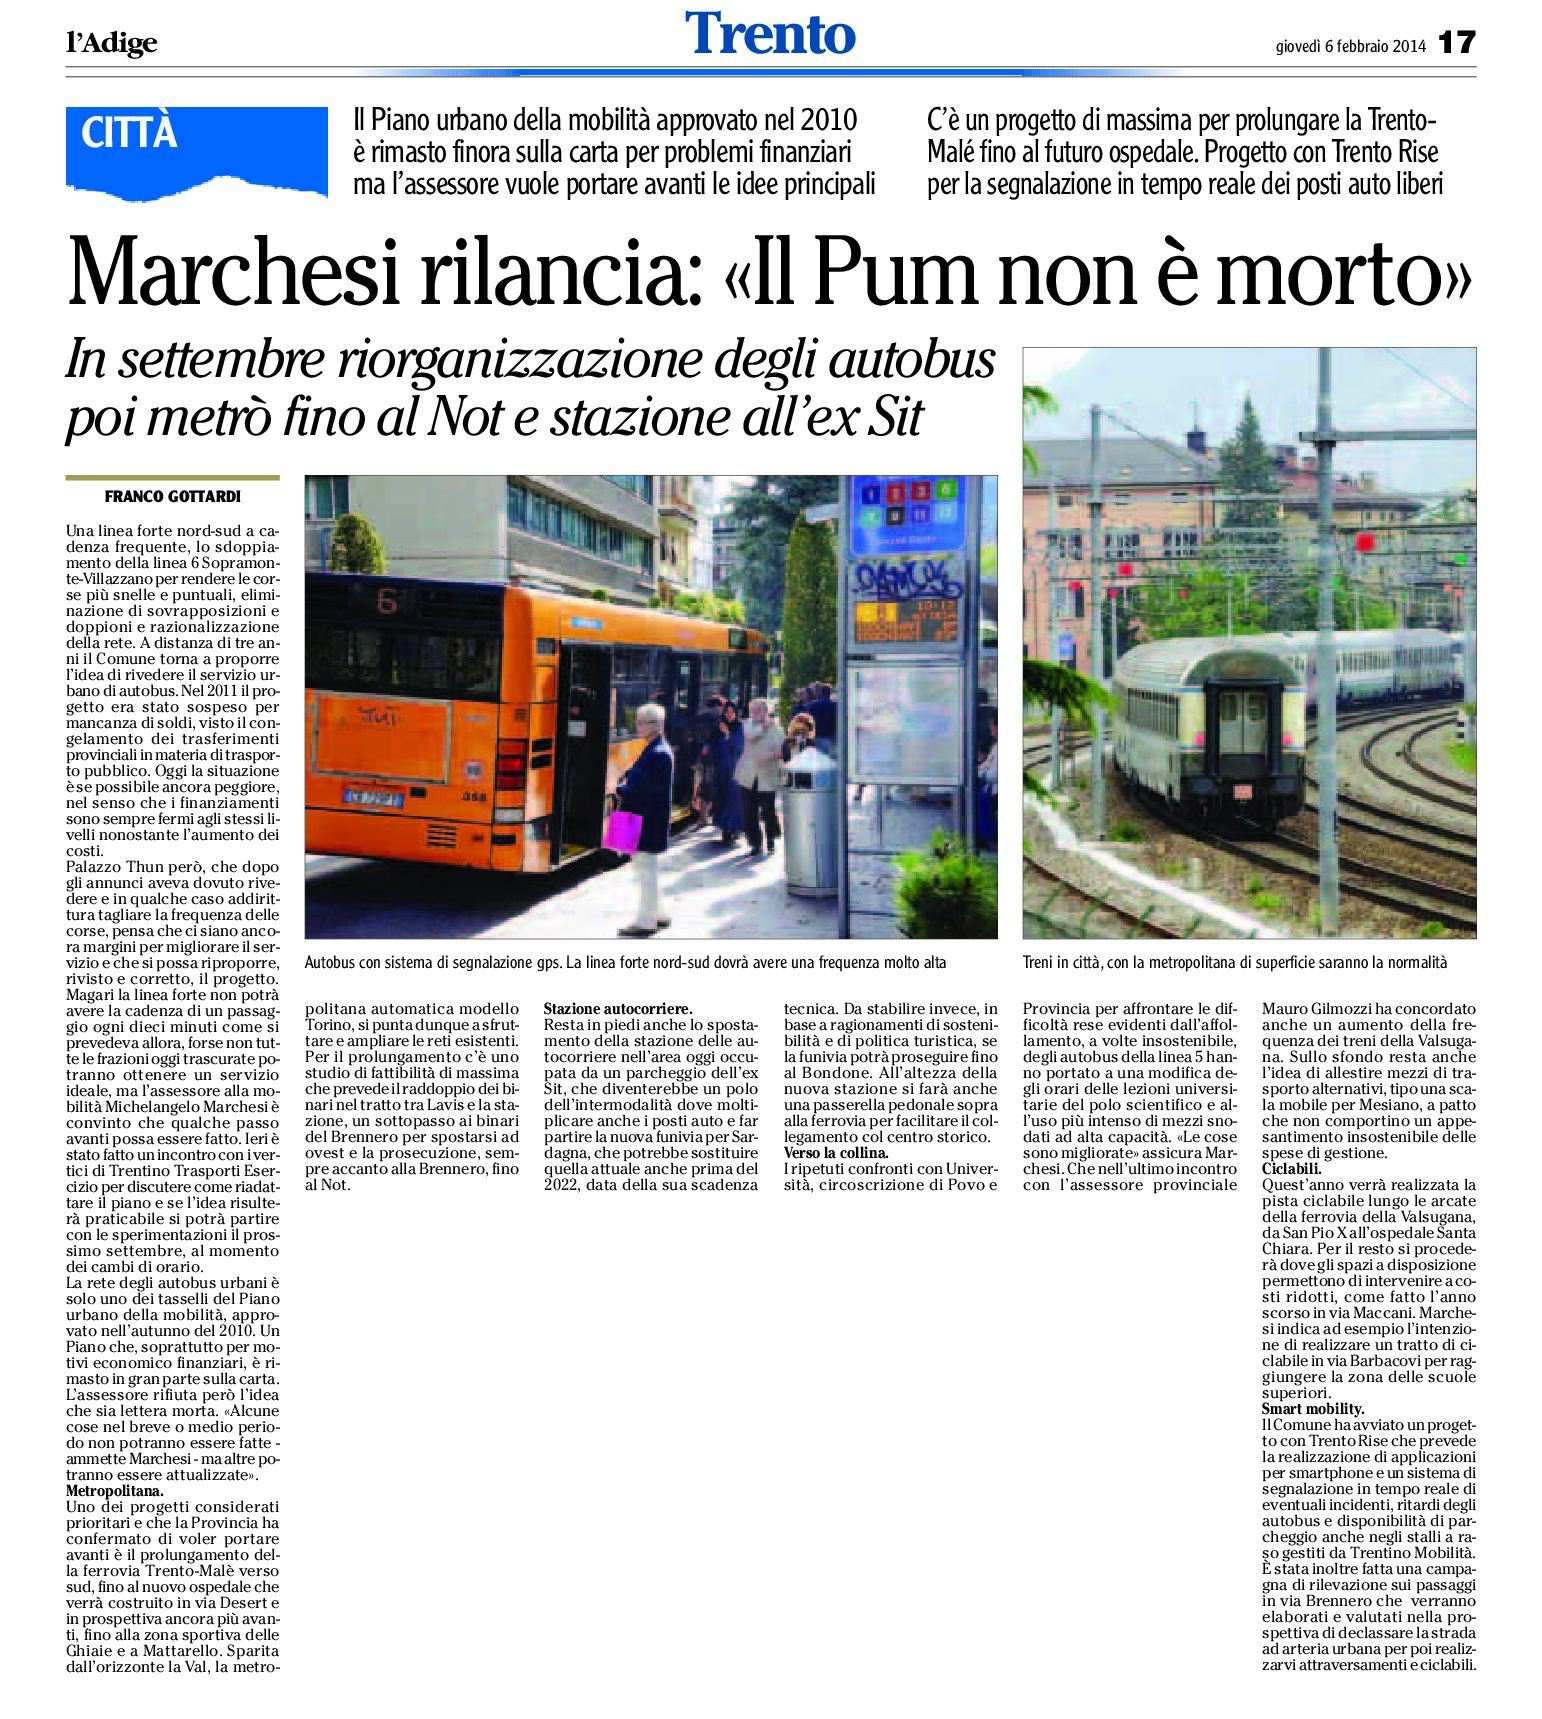 Trento: Marchesi rilancia “Il Pum non è morto”.